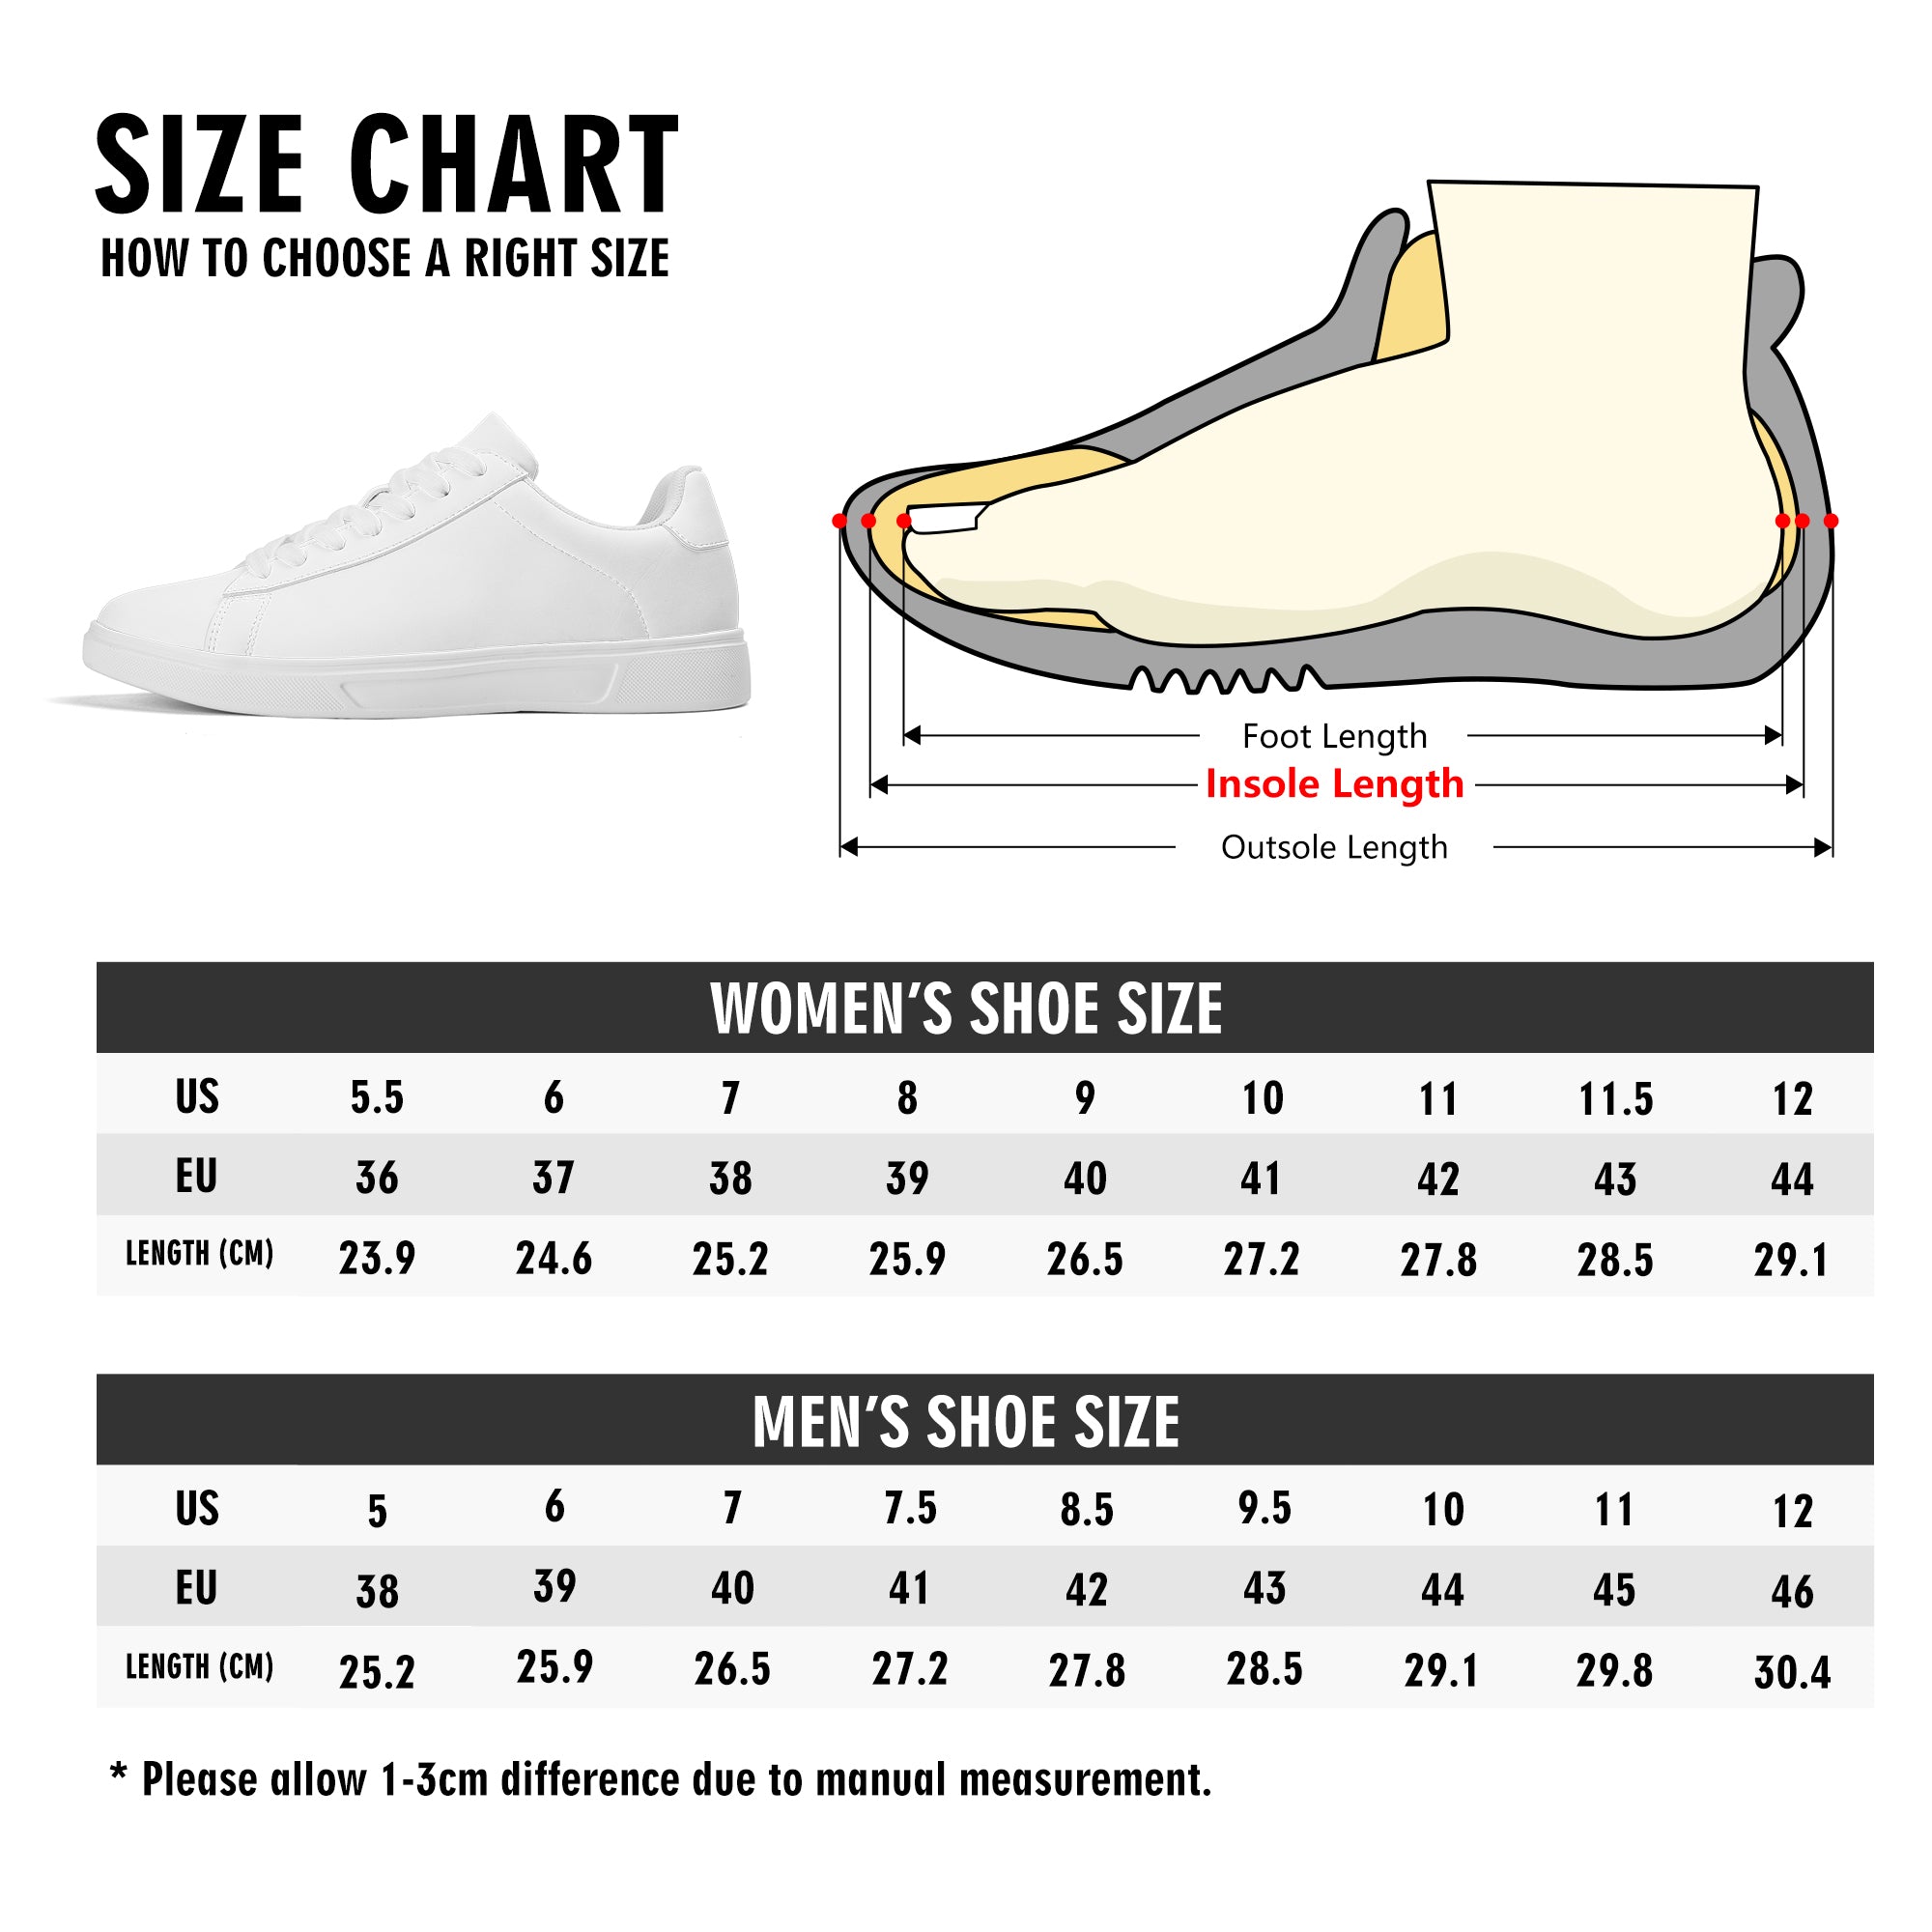 Aurora V2 | Custom Business Shoes | Shoe Zero